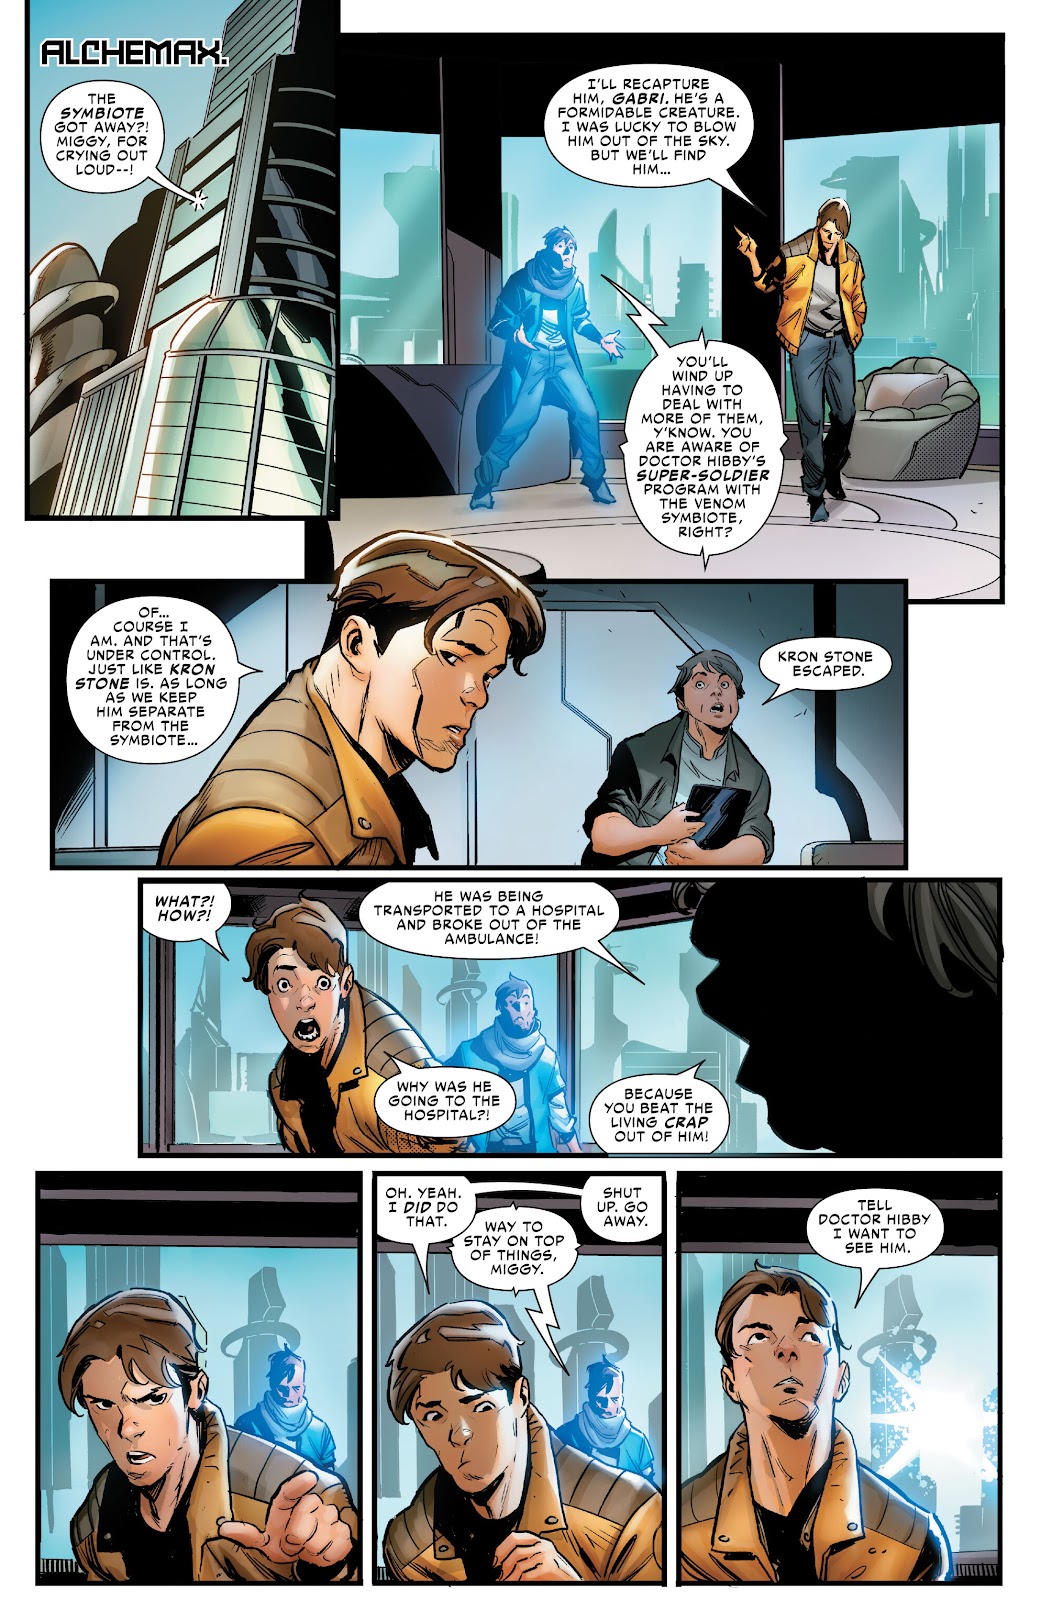 Symbiote Spider-Man 2099 issue 1 - Page 12